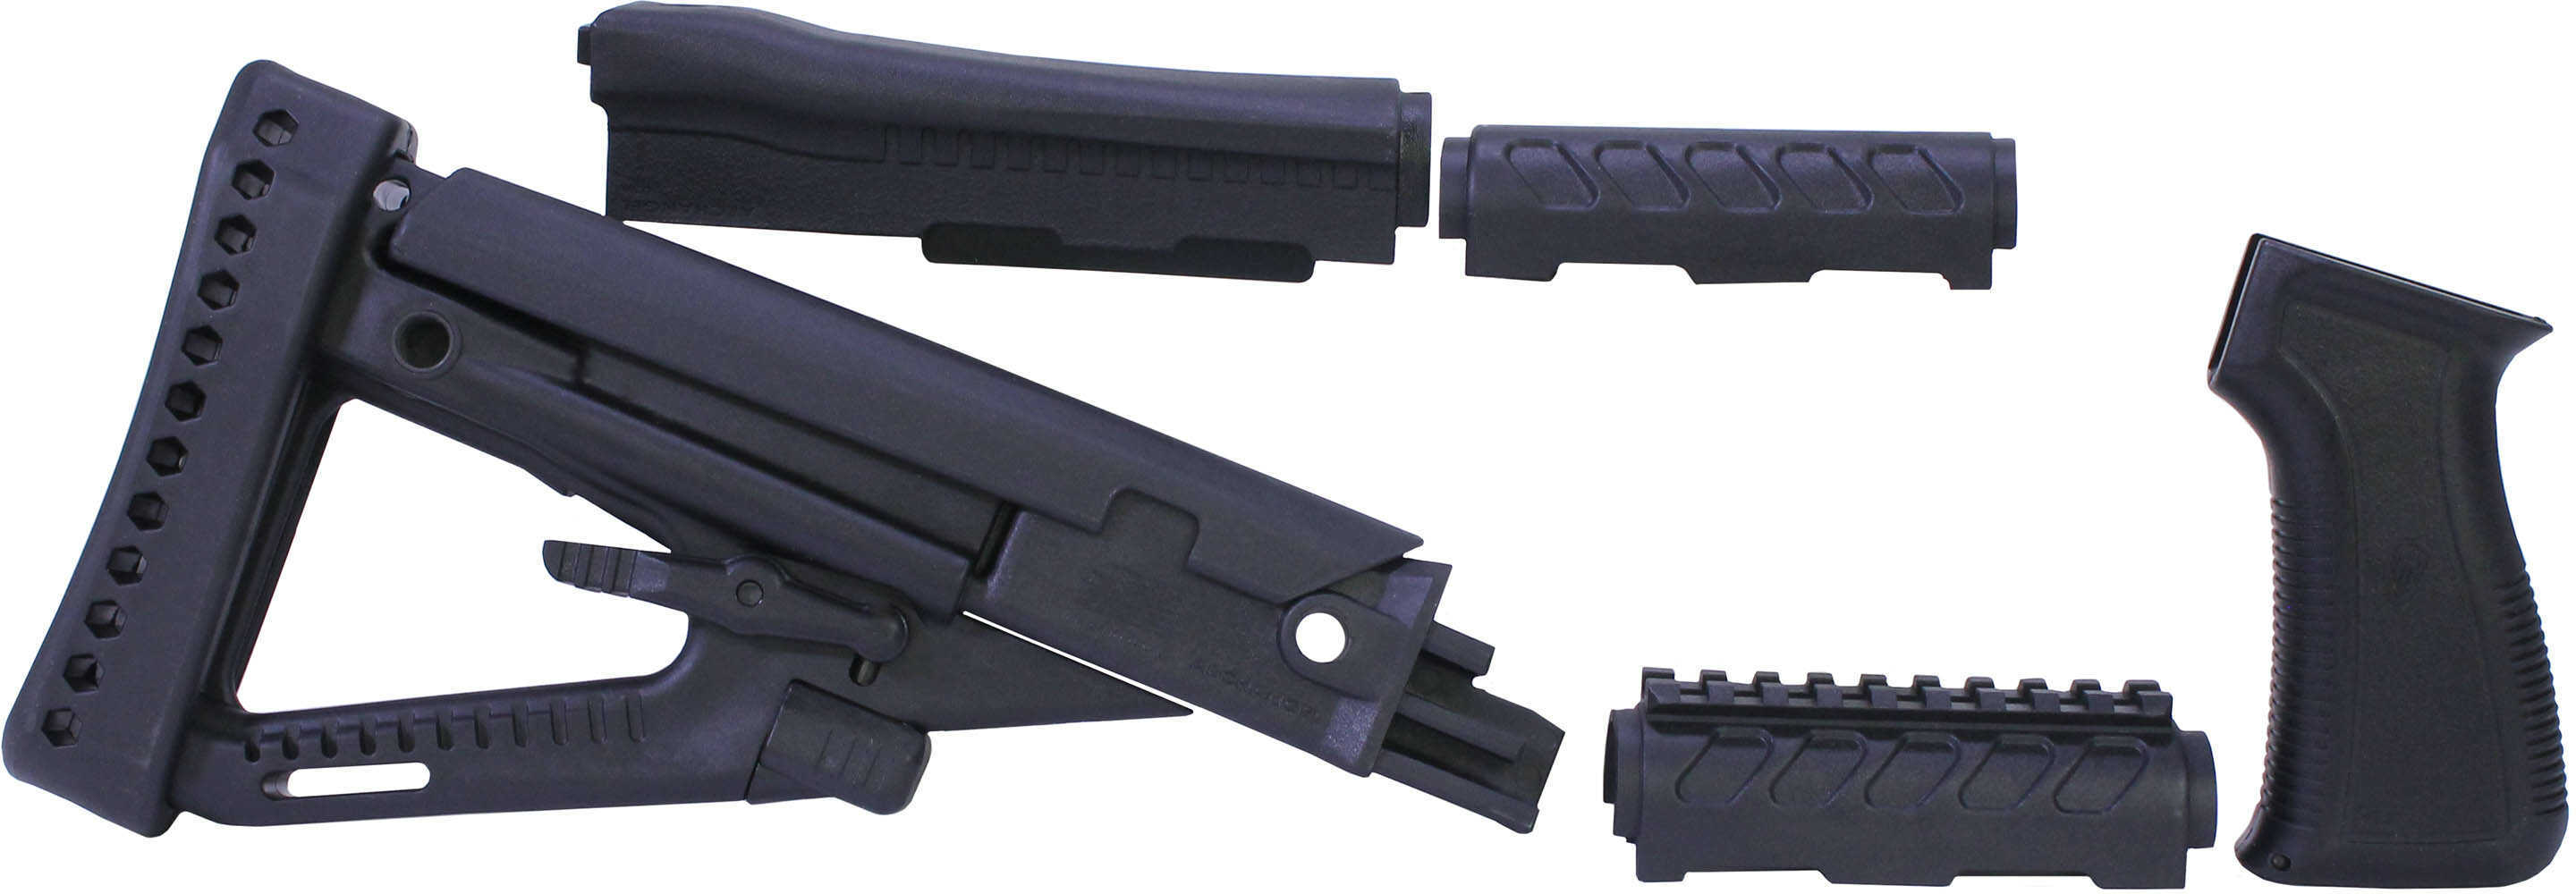 Pro Mag Archangel AK-47/AKM Stock Set Black Polymer